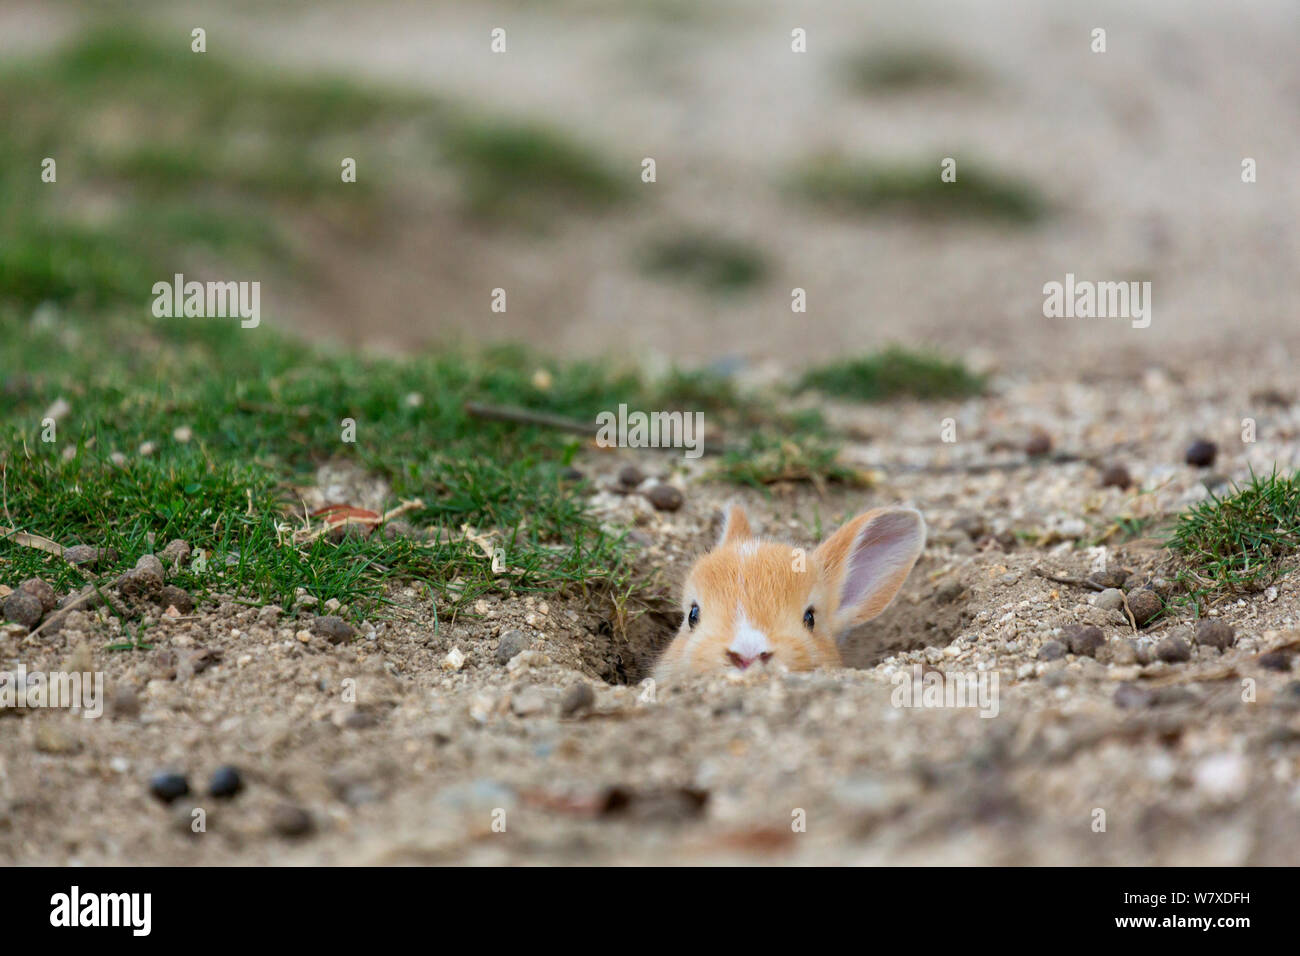 Les sauvages lapin (Oryctolagus cuniculus) piquer bébé tête hors de terrier. L'Île Okunojima, également connu sous le nom de Rabbit Island, Hiroshima, Japon. Banque D'Images